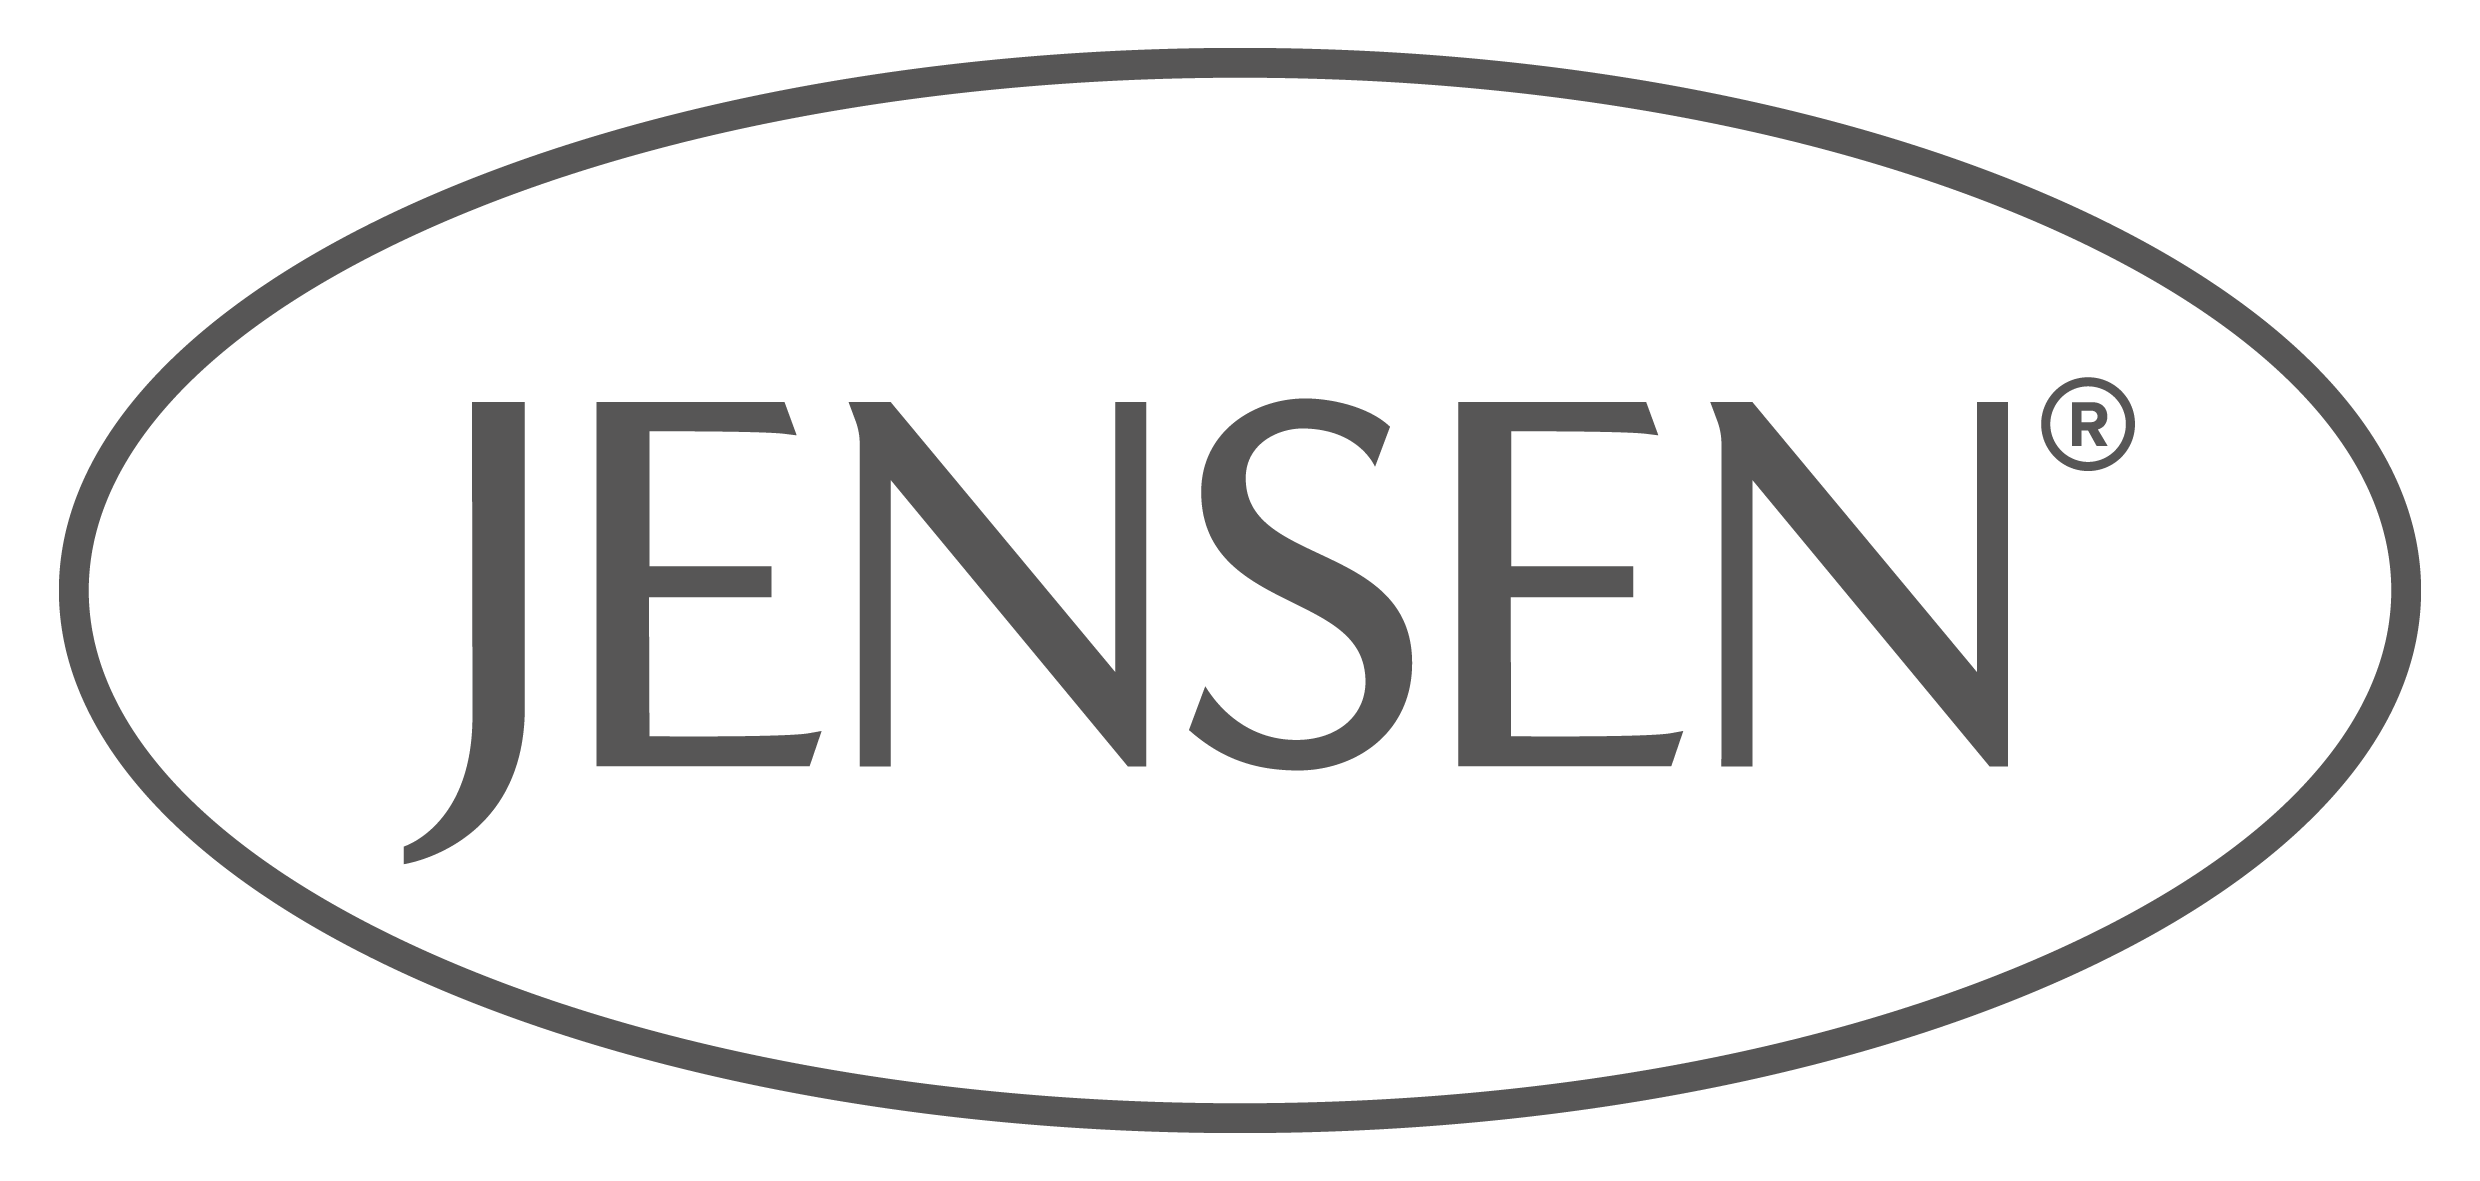 Jensen Store logo scandinavian beds